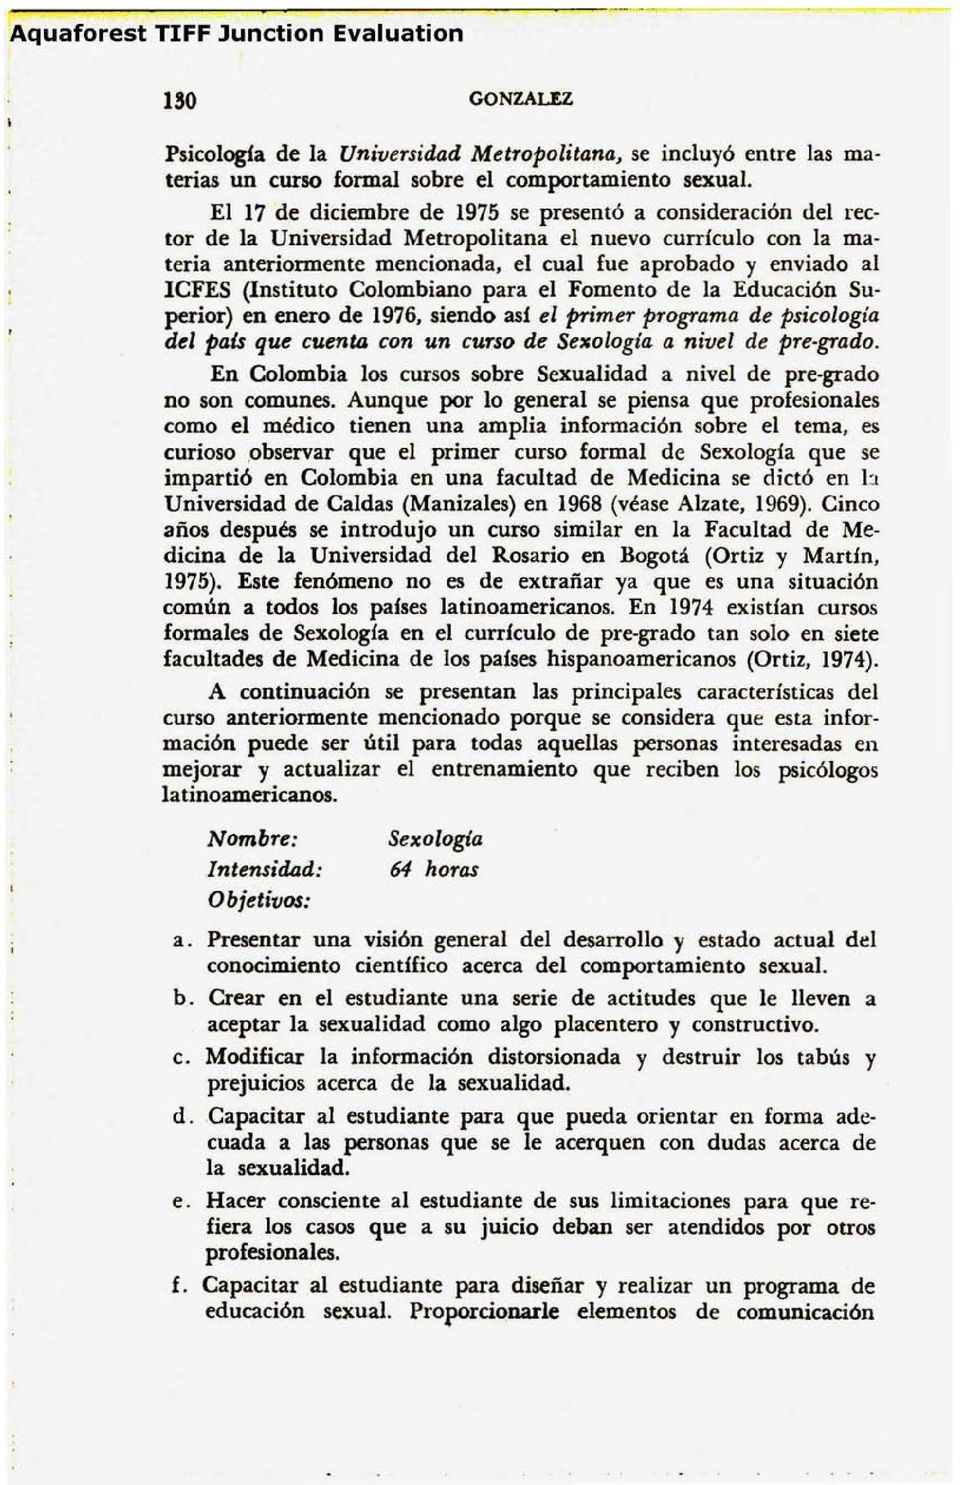 (Instituto Colombiano para el Fomento de la Educación Superior) en enero de 1976,siendo así el primer programa de psicología del paú que cuenta con un curso de Sexoiogia a nivel de pre-grado.